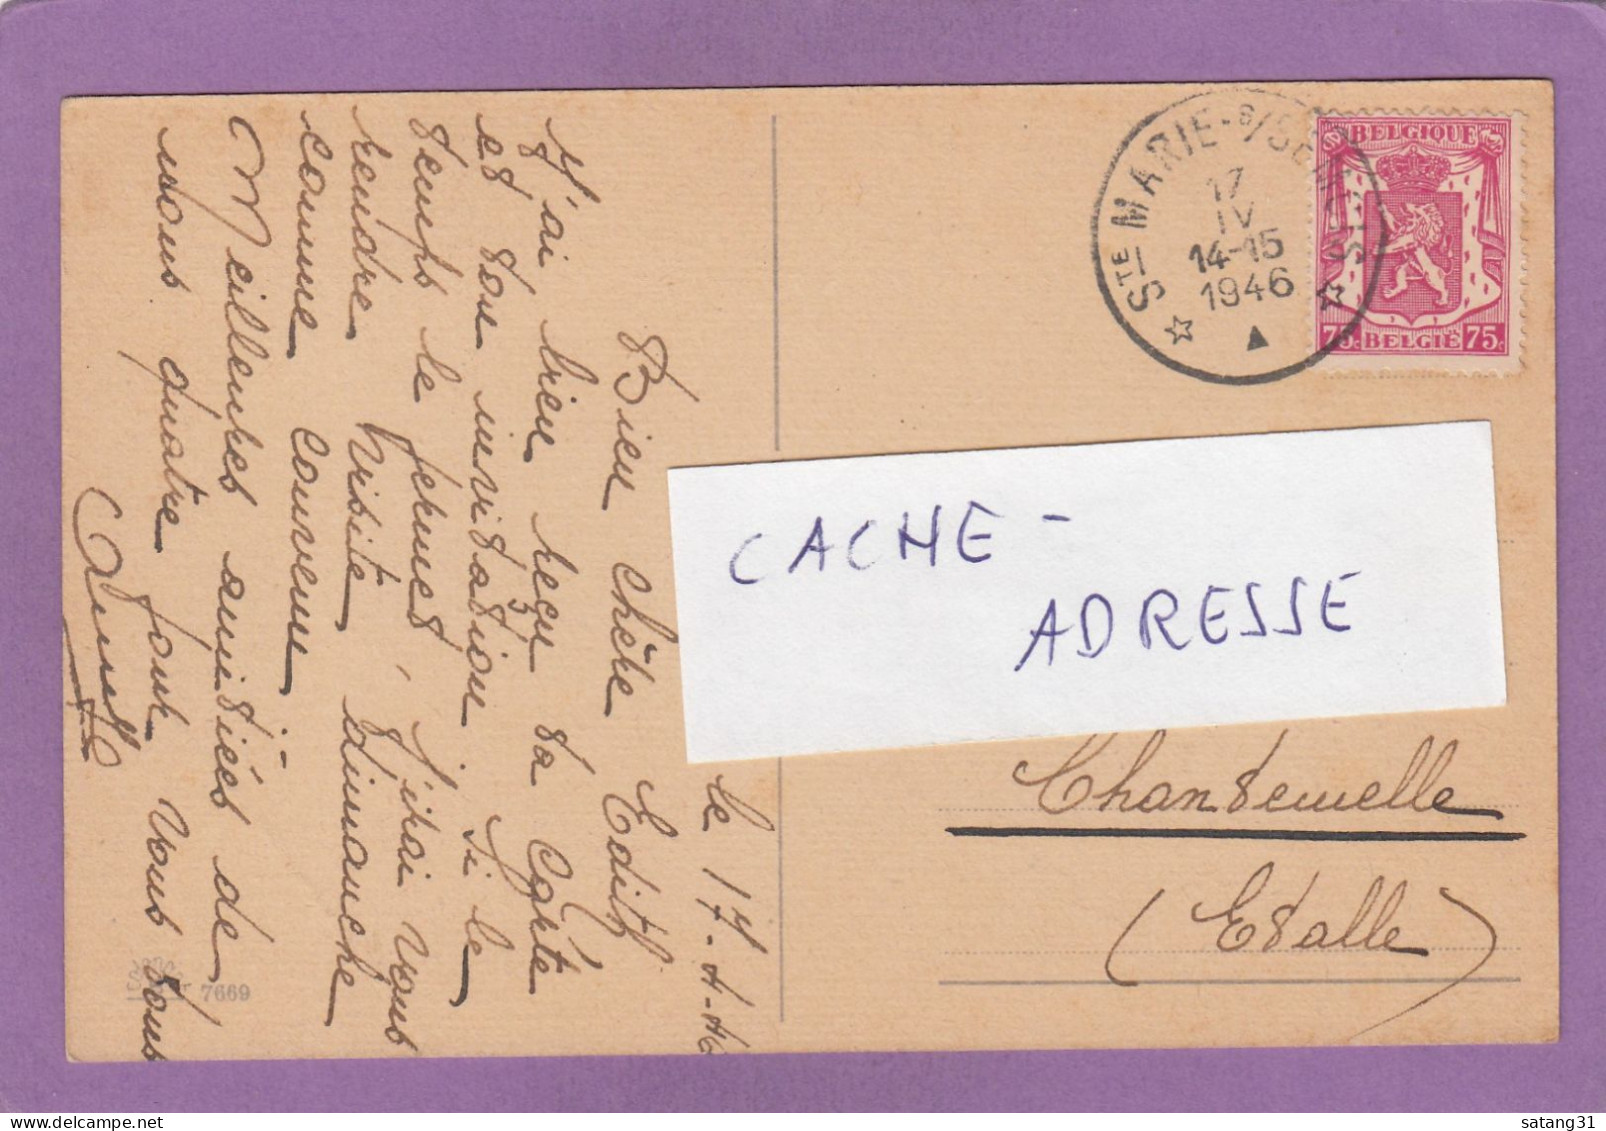 CARTE POSTALE DE SAINTE MARIE SUR BSEMOIS POUR CHANTENELLE,1946. - Brieven En Documenten